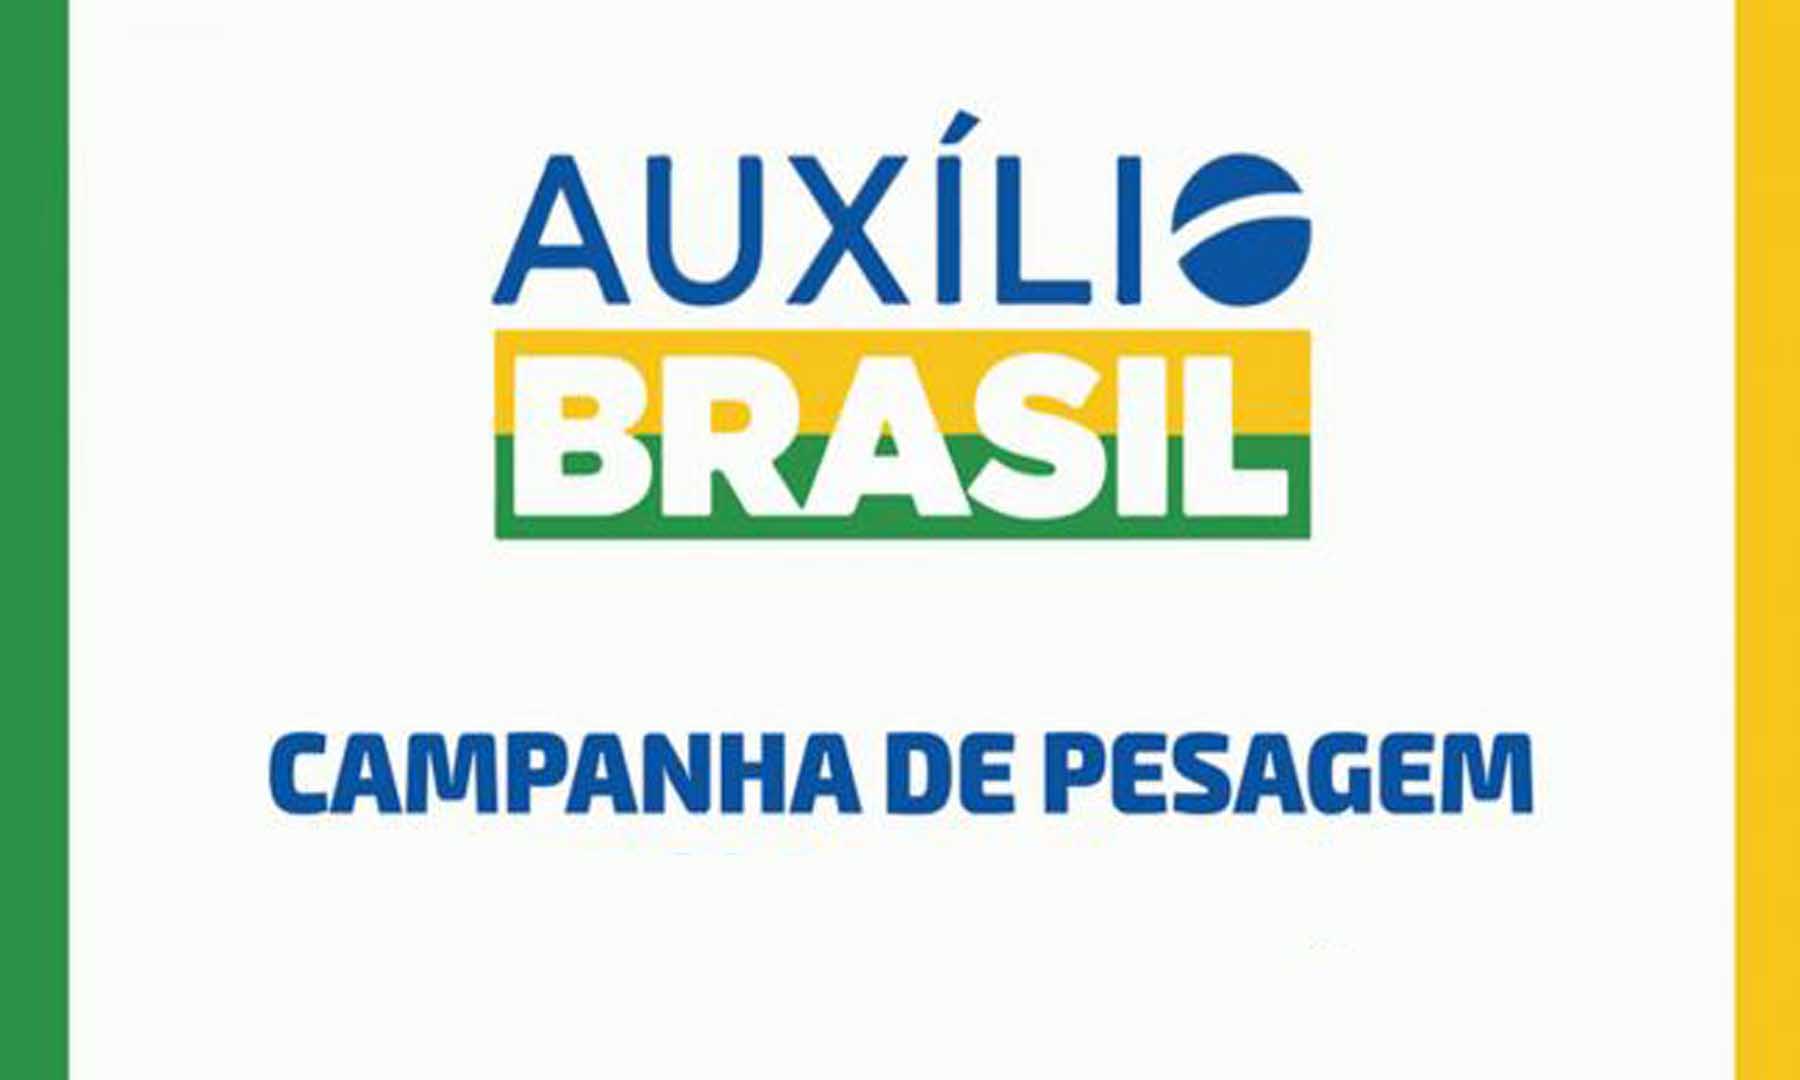 ATENÇÃO: PESAGEM PARA O AUXÍLIO BRASIL